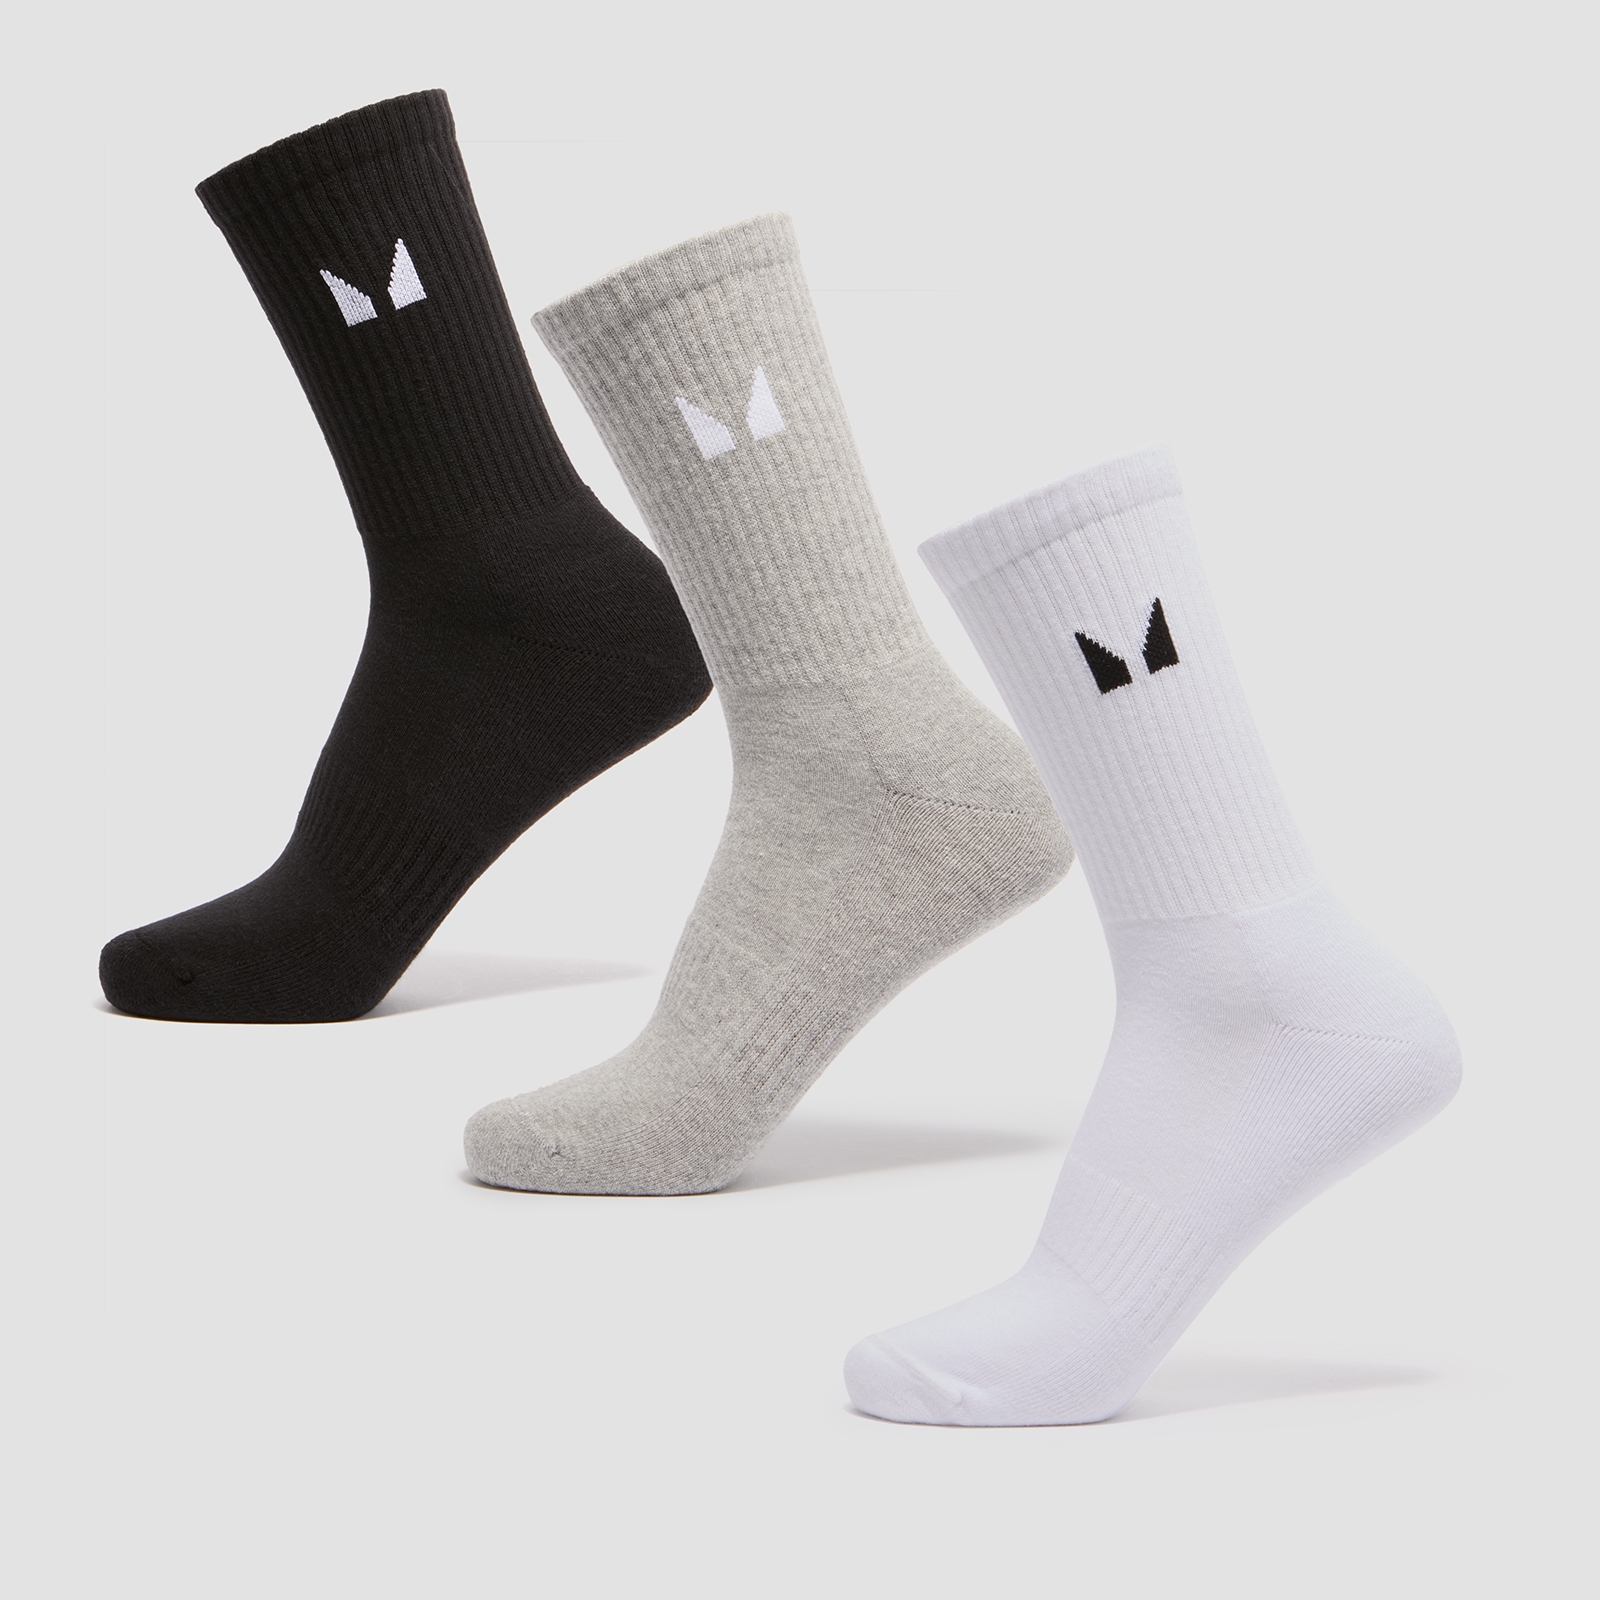 Дамски отборни чорапи Essentials на MP (3 чифт) — черно/бяло/сиво - UK 2-5